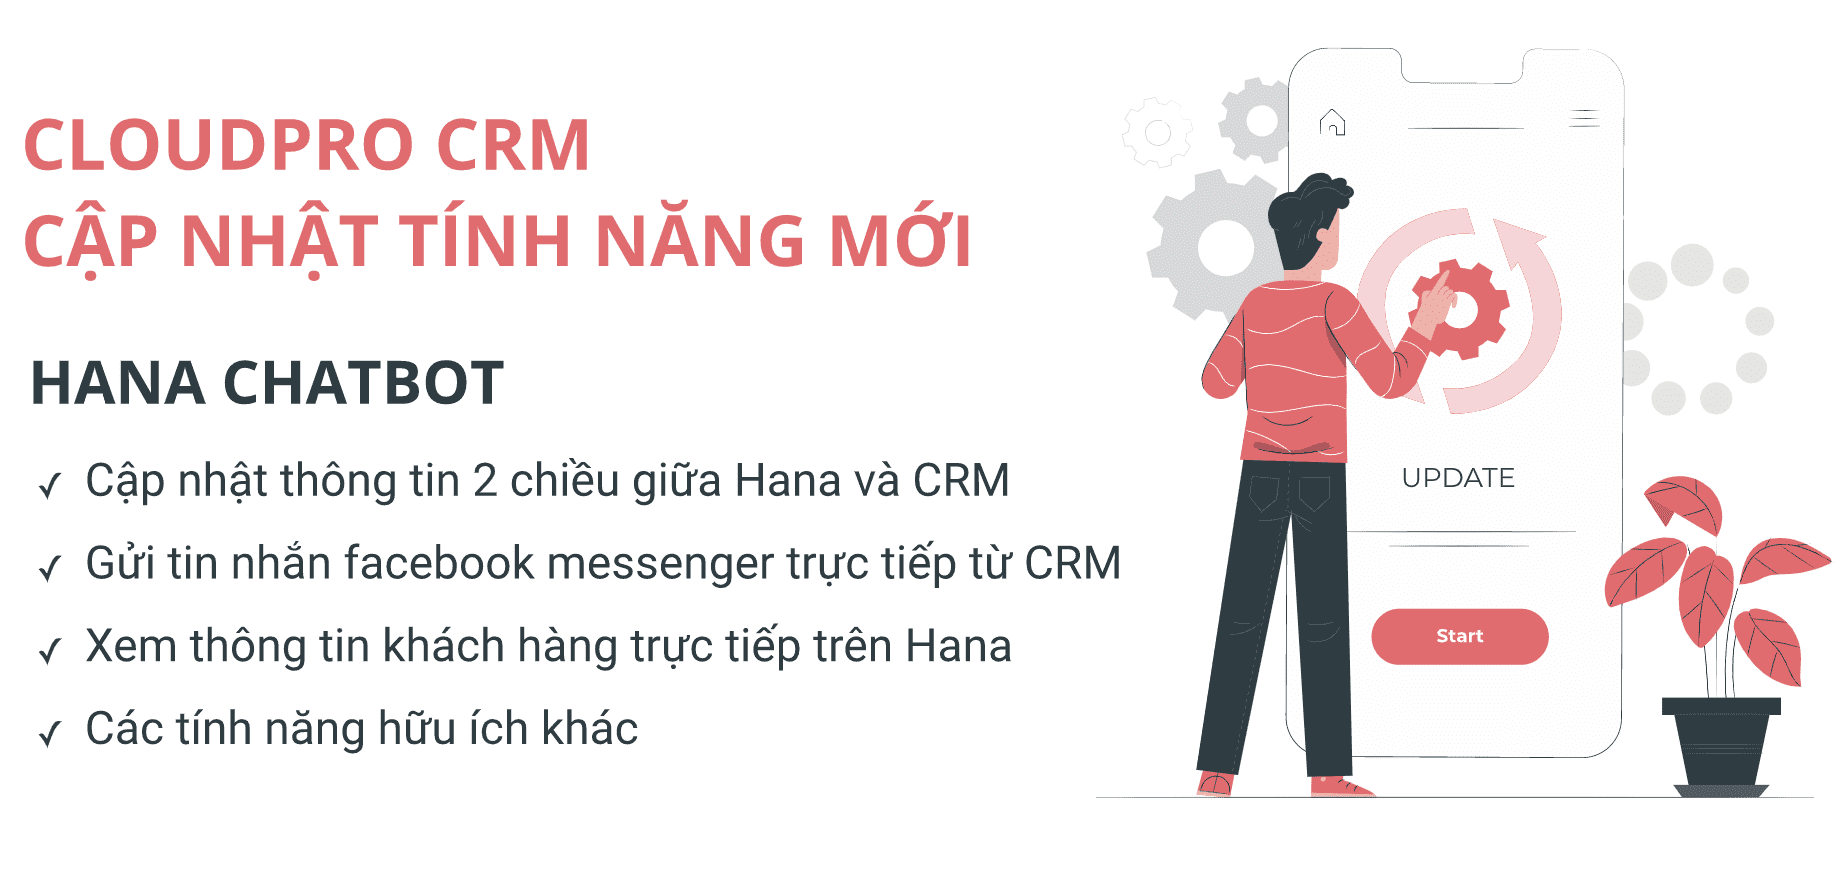 CloudPro CRM update tính năng năng cho hana chatbot